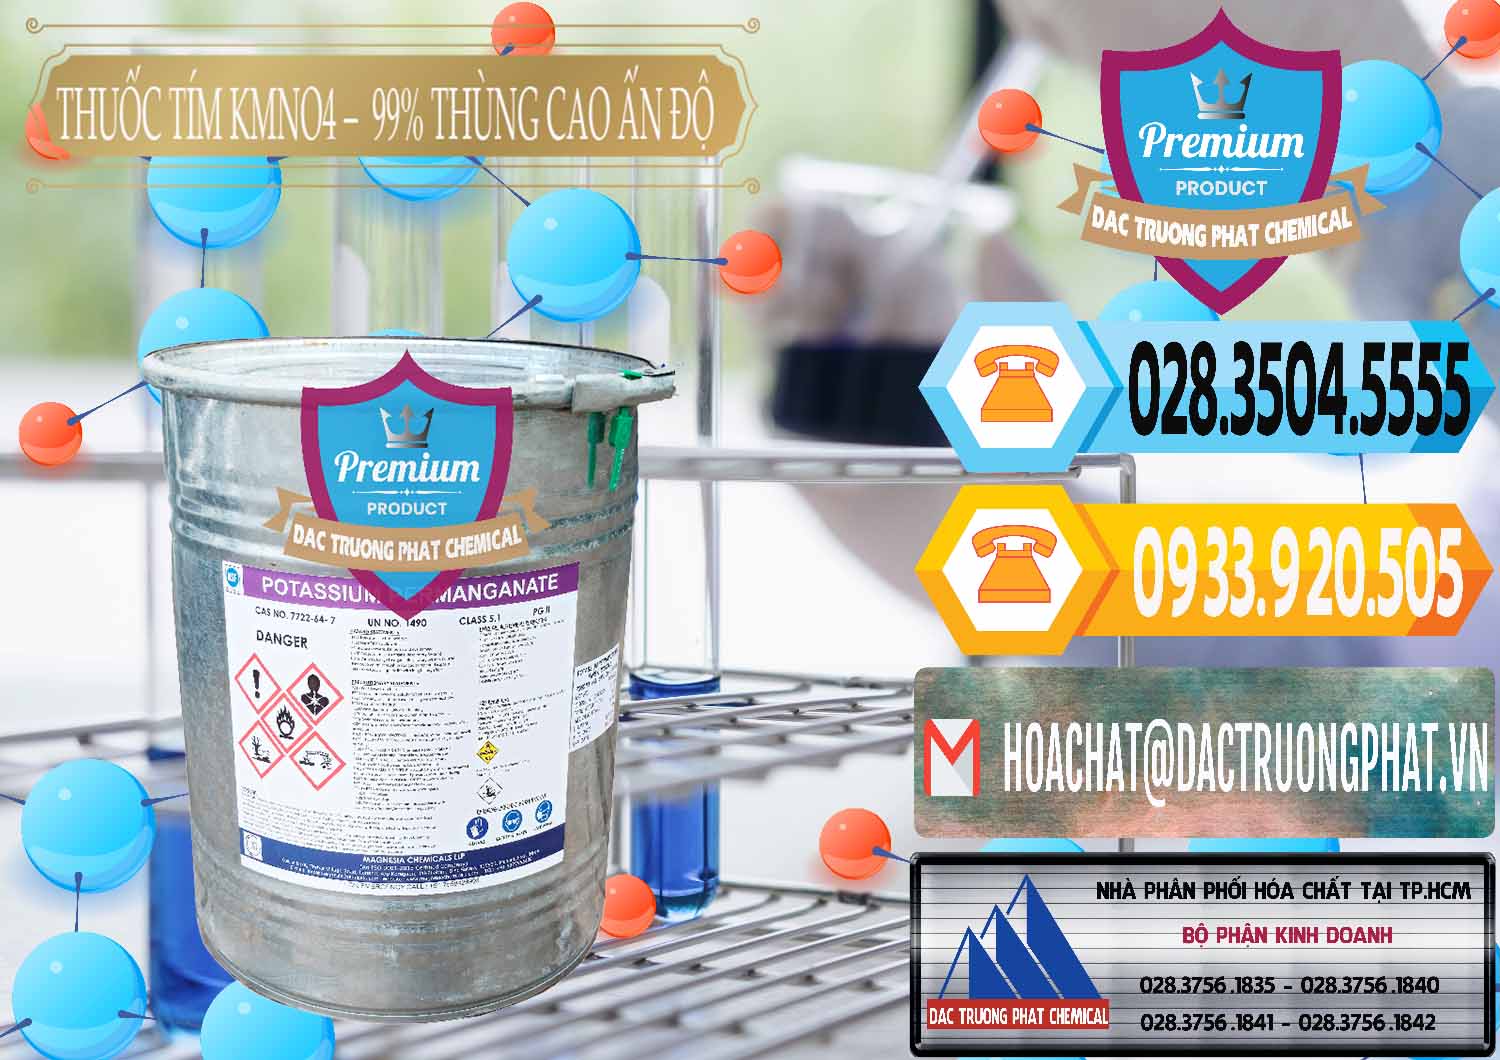 Đơn vị chuyên cung cấp ( bán ) Thuốc Tím - KMNO4 Thùng Cao 99% Magnesia Chemicals Ấn Độ India - 0164 - Nơi chuyên phân phối - nhập khẩu hóa chất tại TP.HCM - hoachattayrua.net